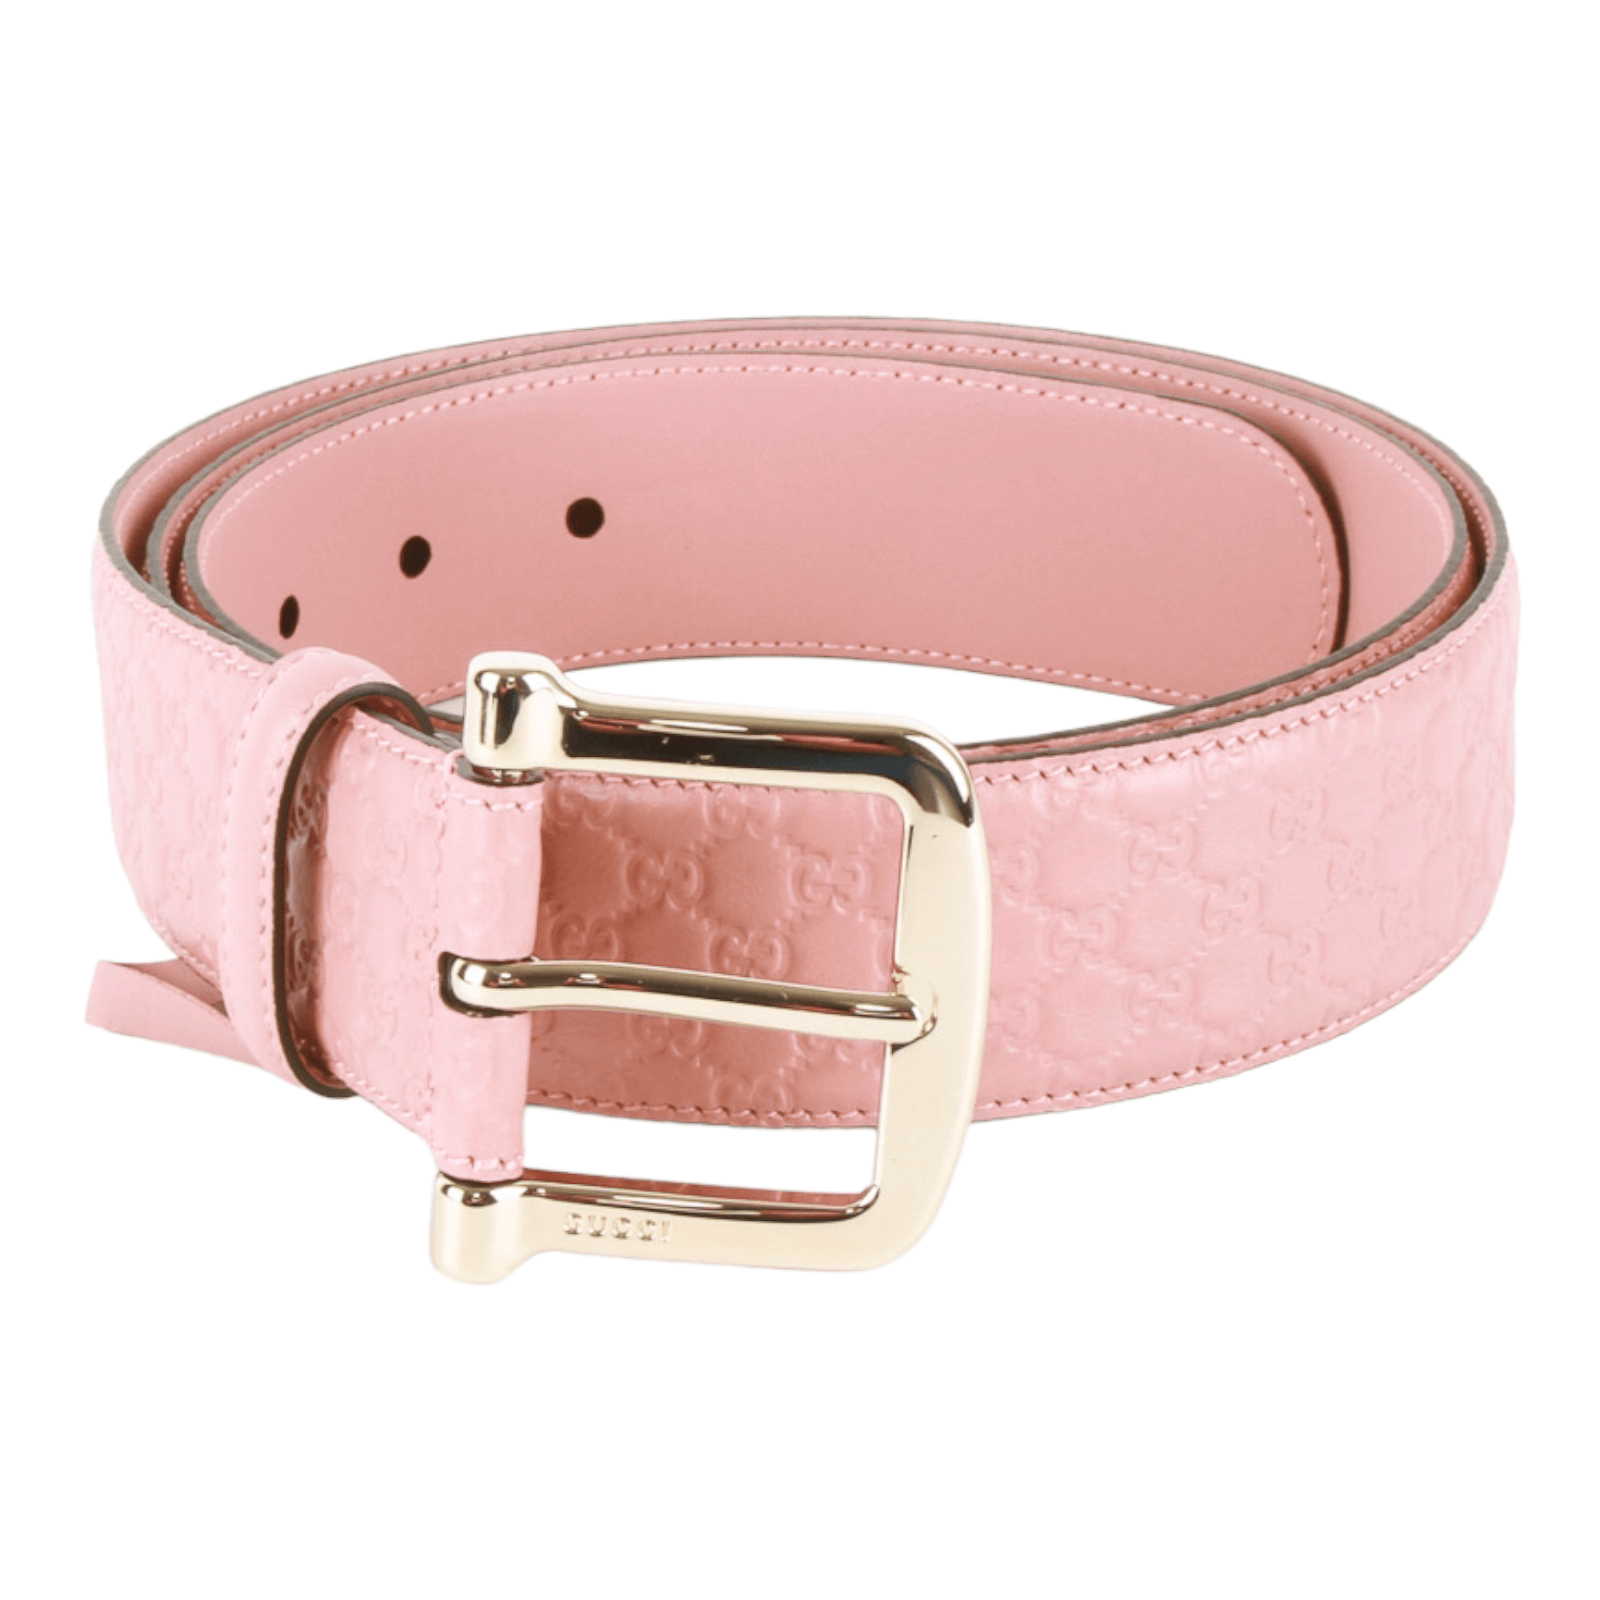 Gucci Micro Guccissima Leather Belt